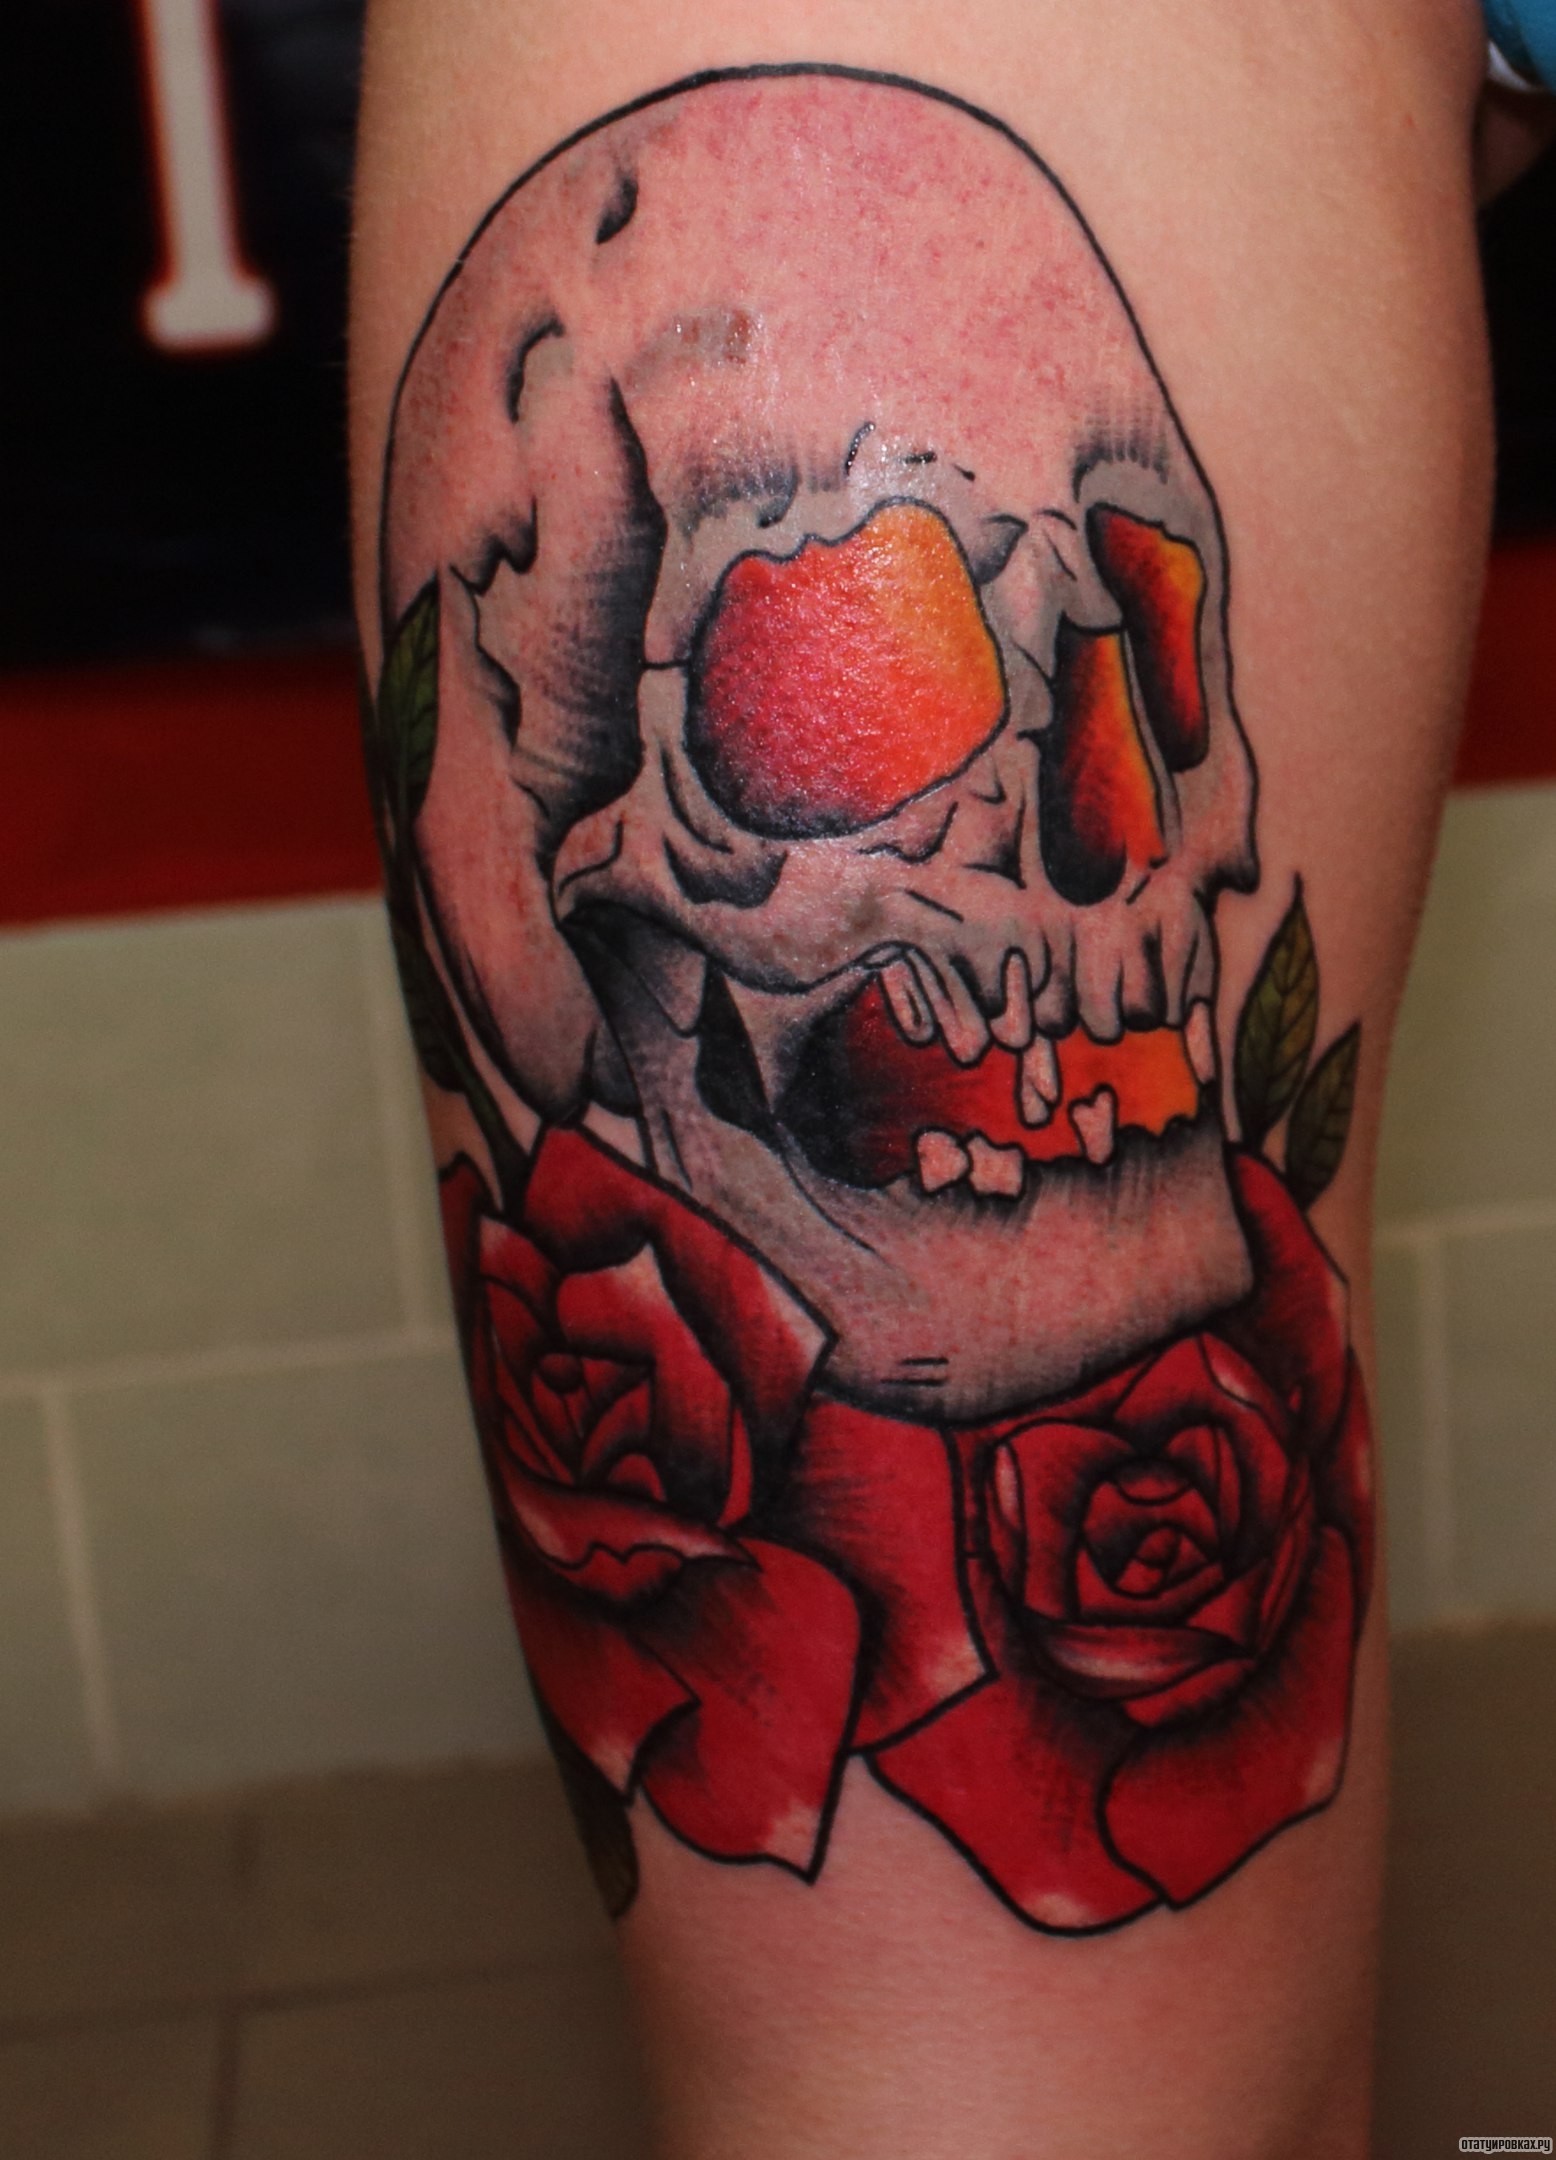 Фотография татуировки под названием «Череп с розами»